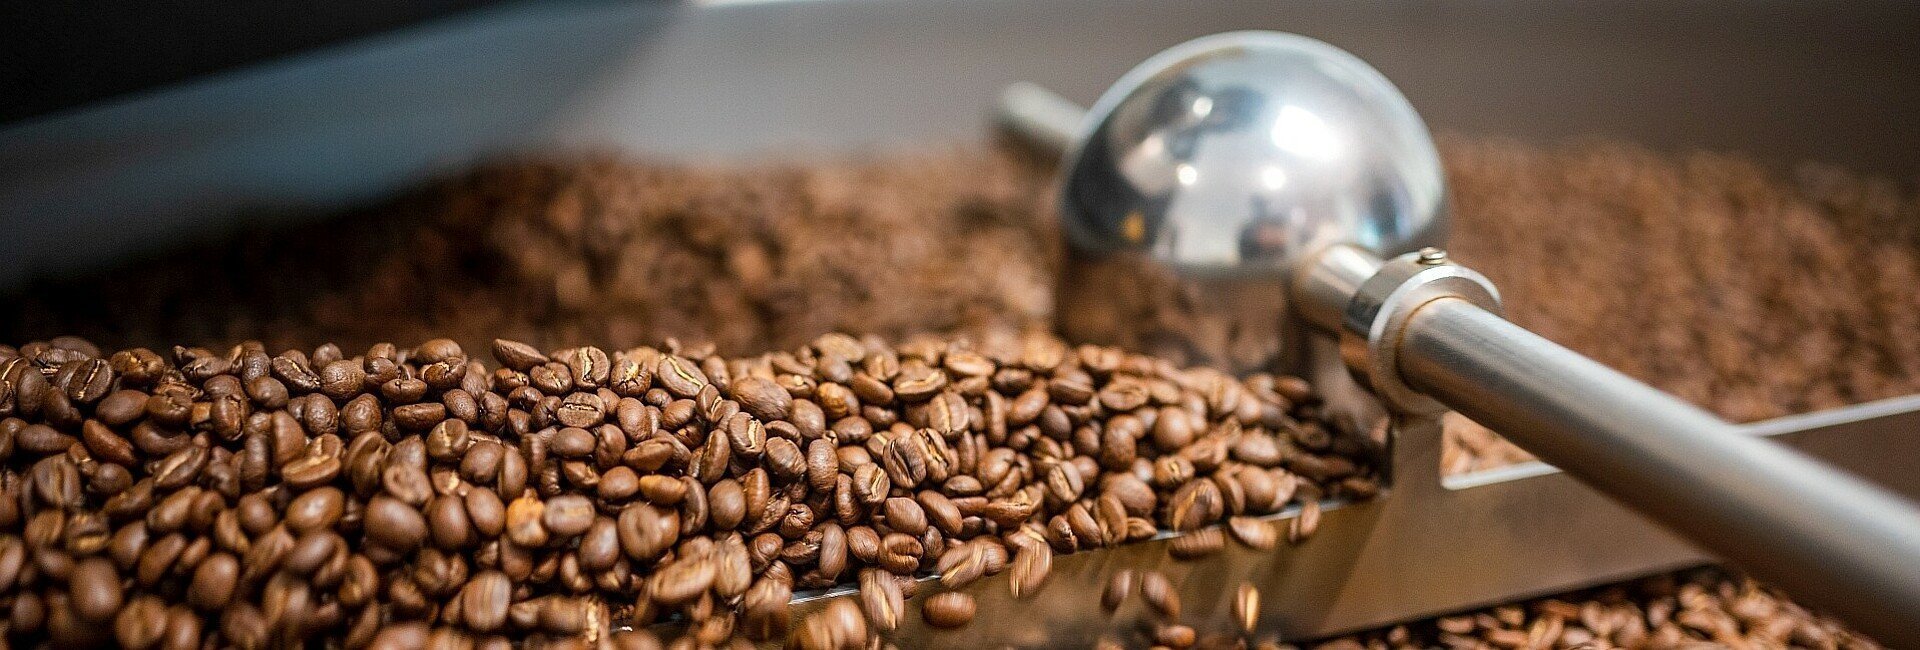 Kaffeebohnen werden in der Kölner Kaffeemanufaktur geröstet